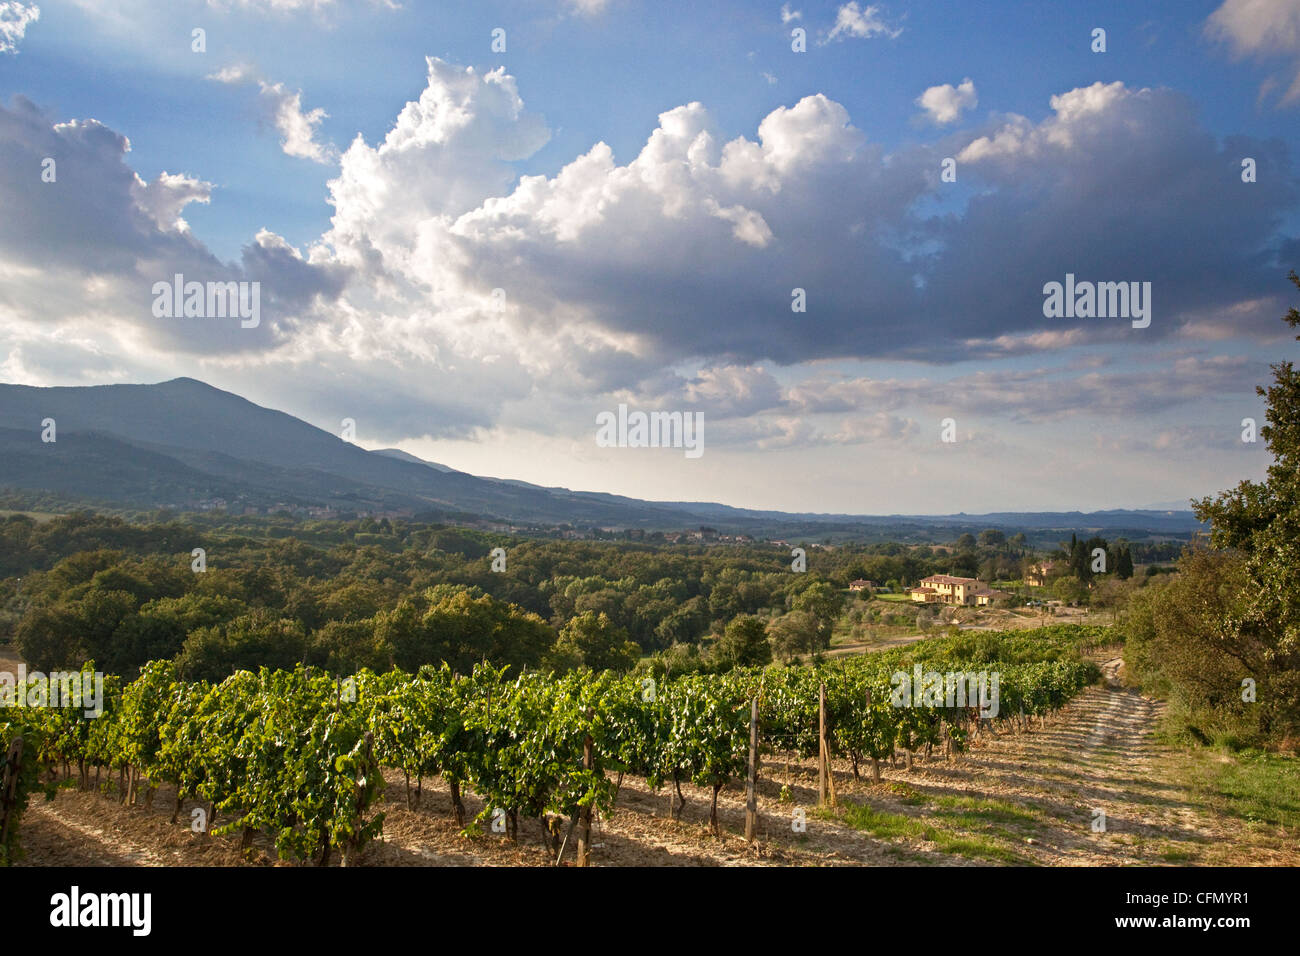 Una villa toscana adagiata nella propria valle circondata da vigneti sotto un cielo imponente, con il Monte Cetona in background Foto Stock